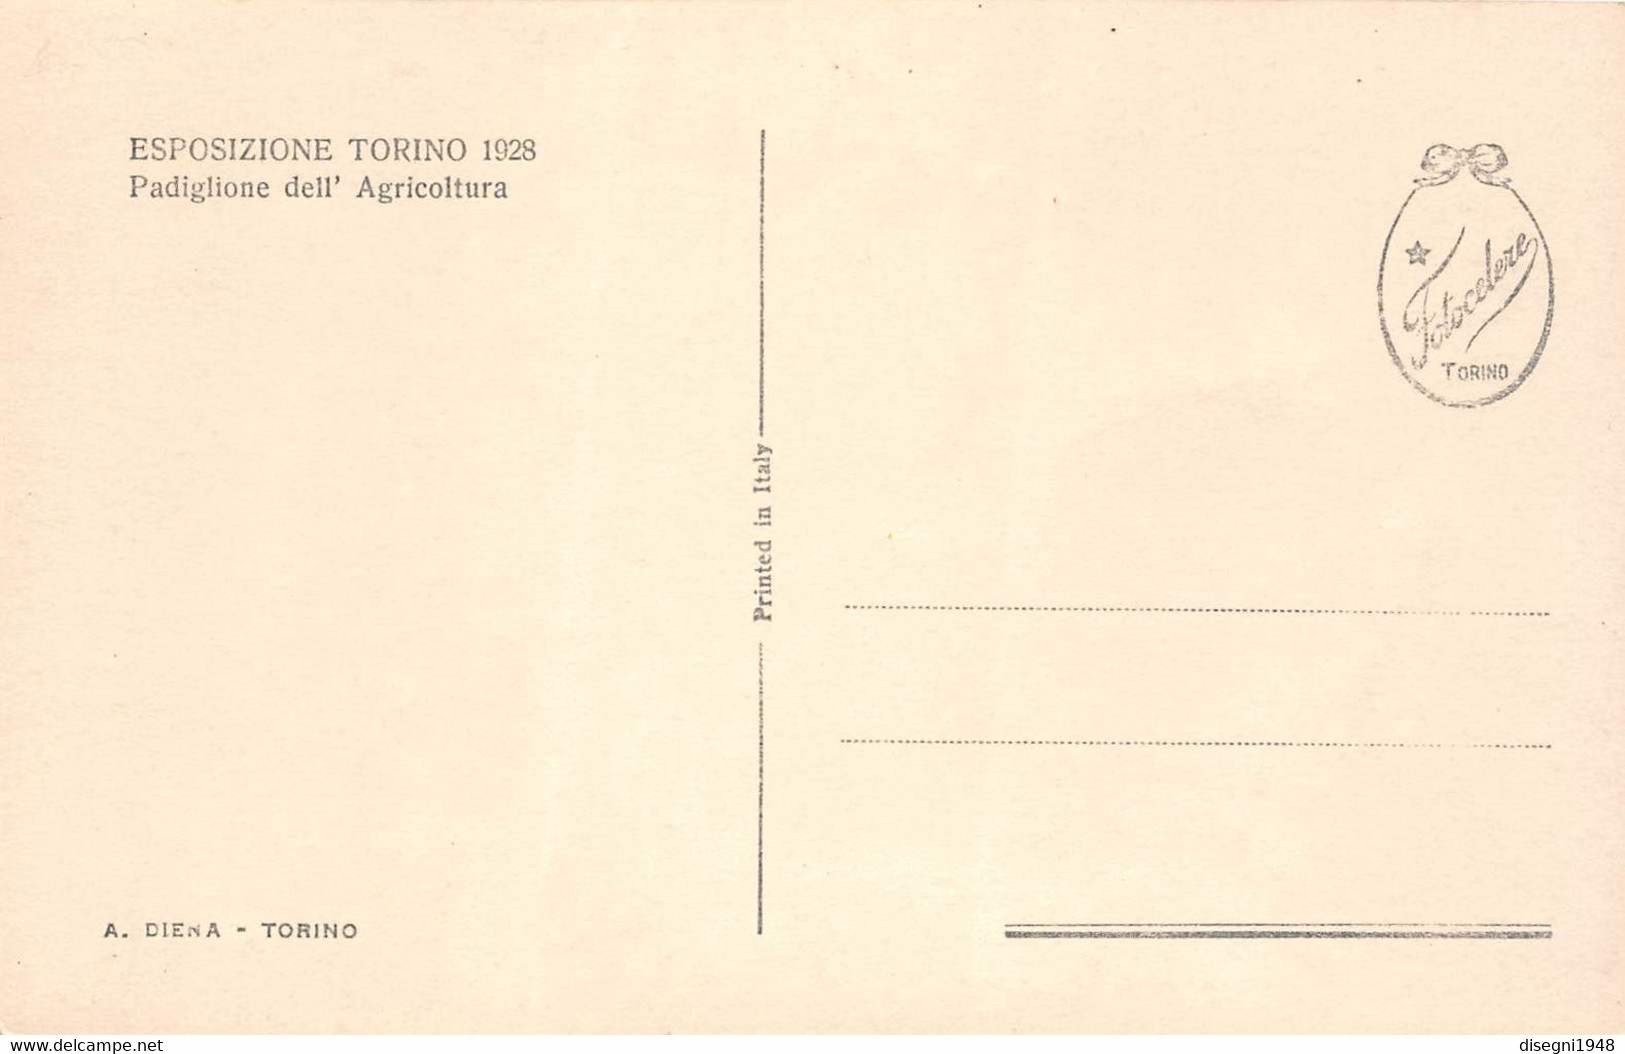 09886 "ESPOSIZIONE TORINO 1928 - PADIGLIONE DELL'AGRICOLTURA" ARCHITETT. DEL '900. ANIMATA.CART. ORIG. NON SPED. - Exhibitions